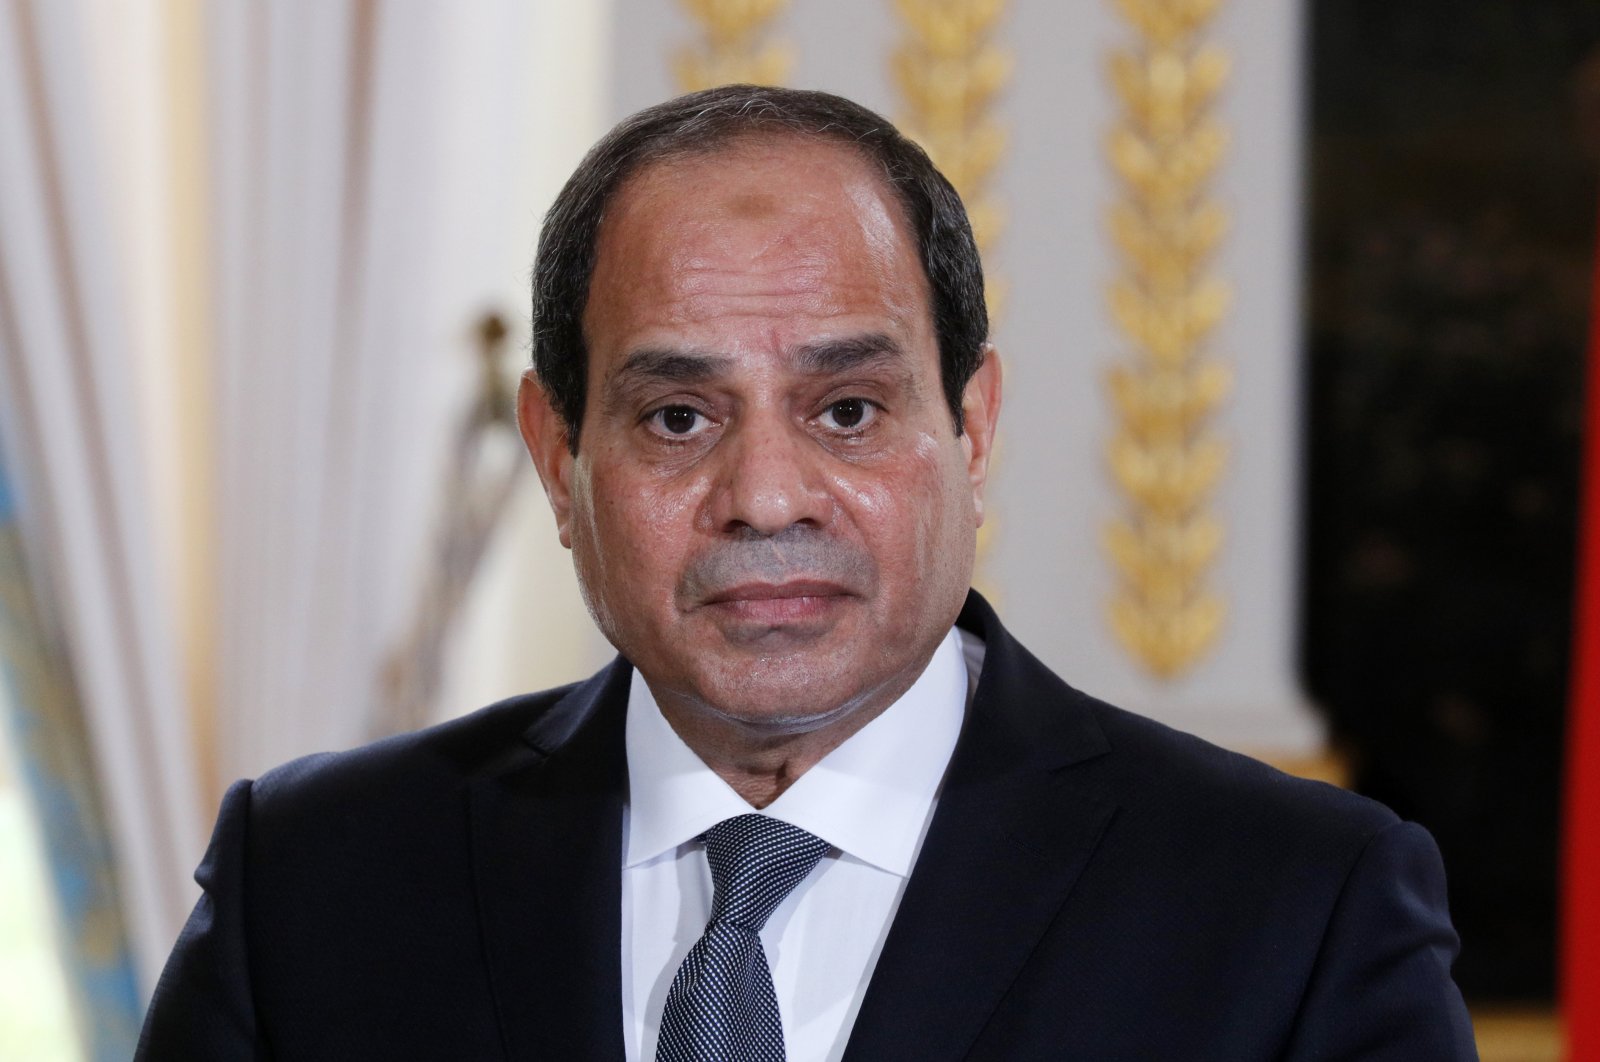 Presiden Al-Sisi Ancam Kirim Tentara Mesir Ke Libya Jika GNA Lewati Garis Merah Sirte dan Jufra